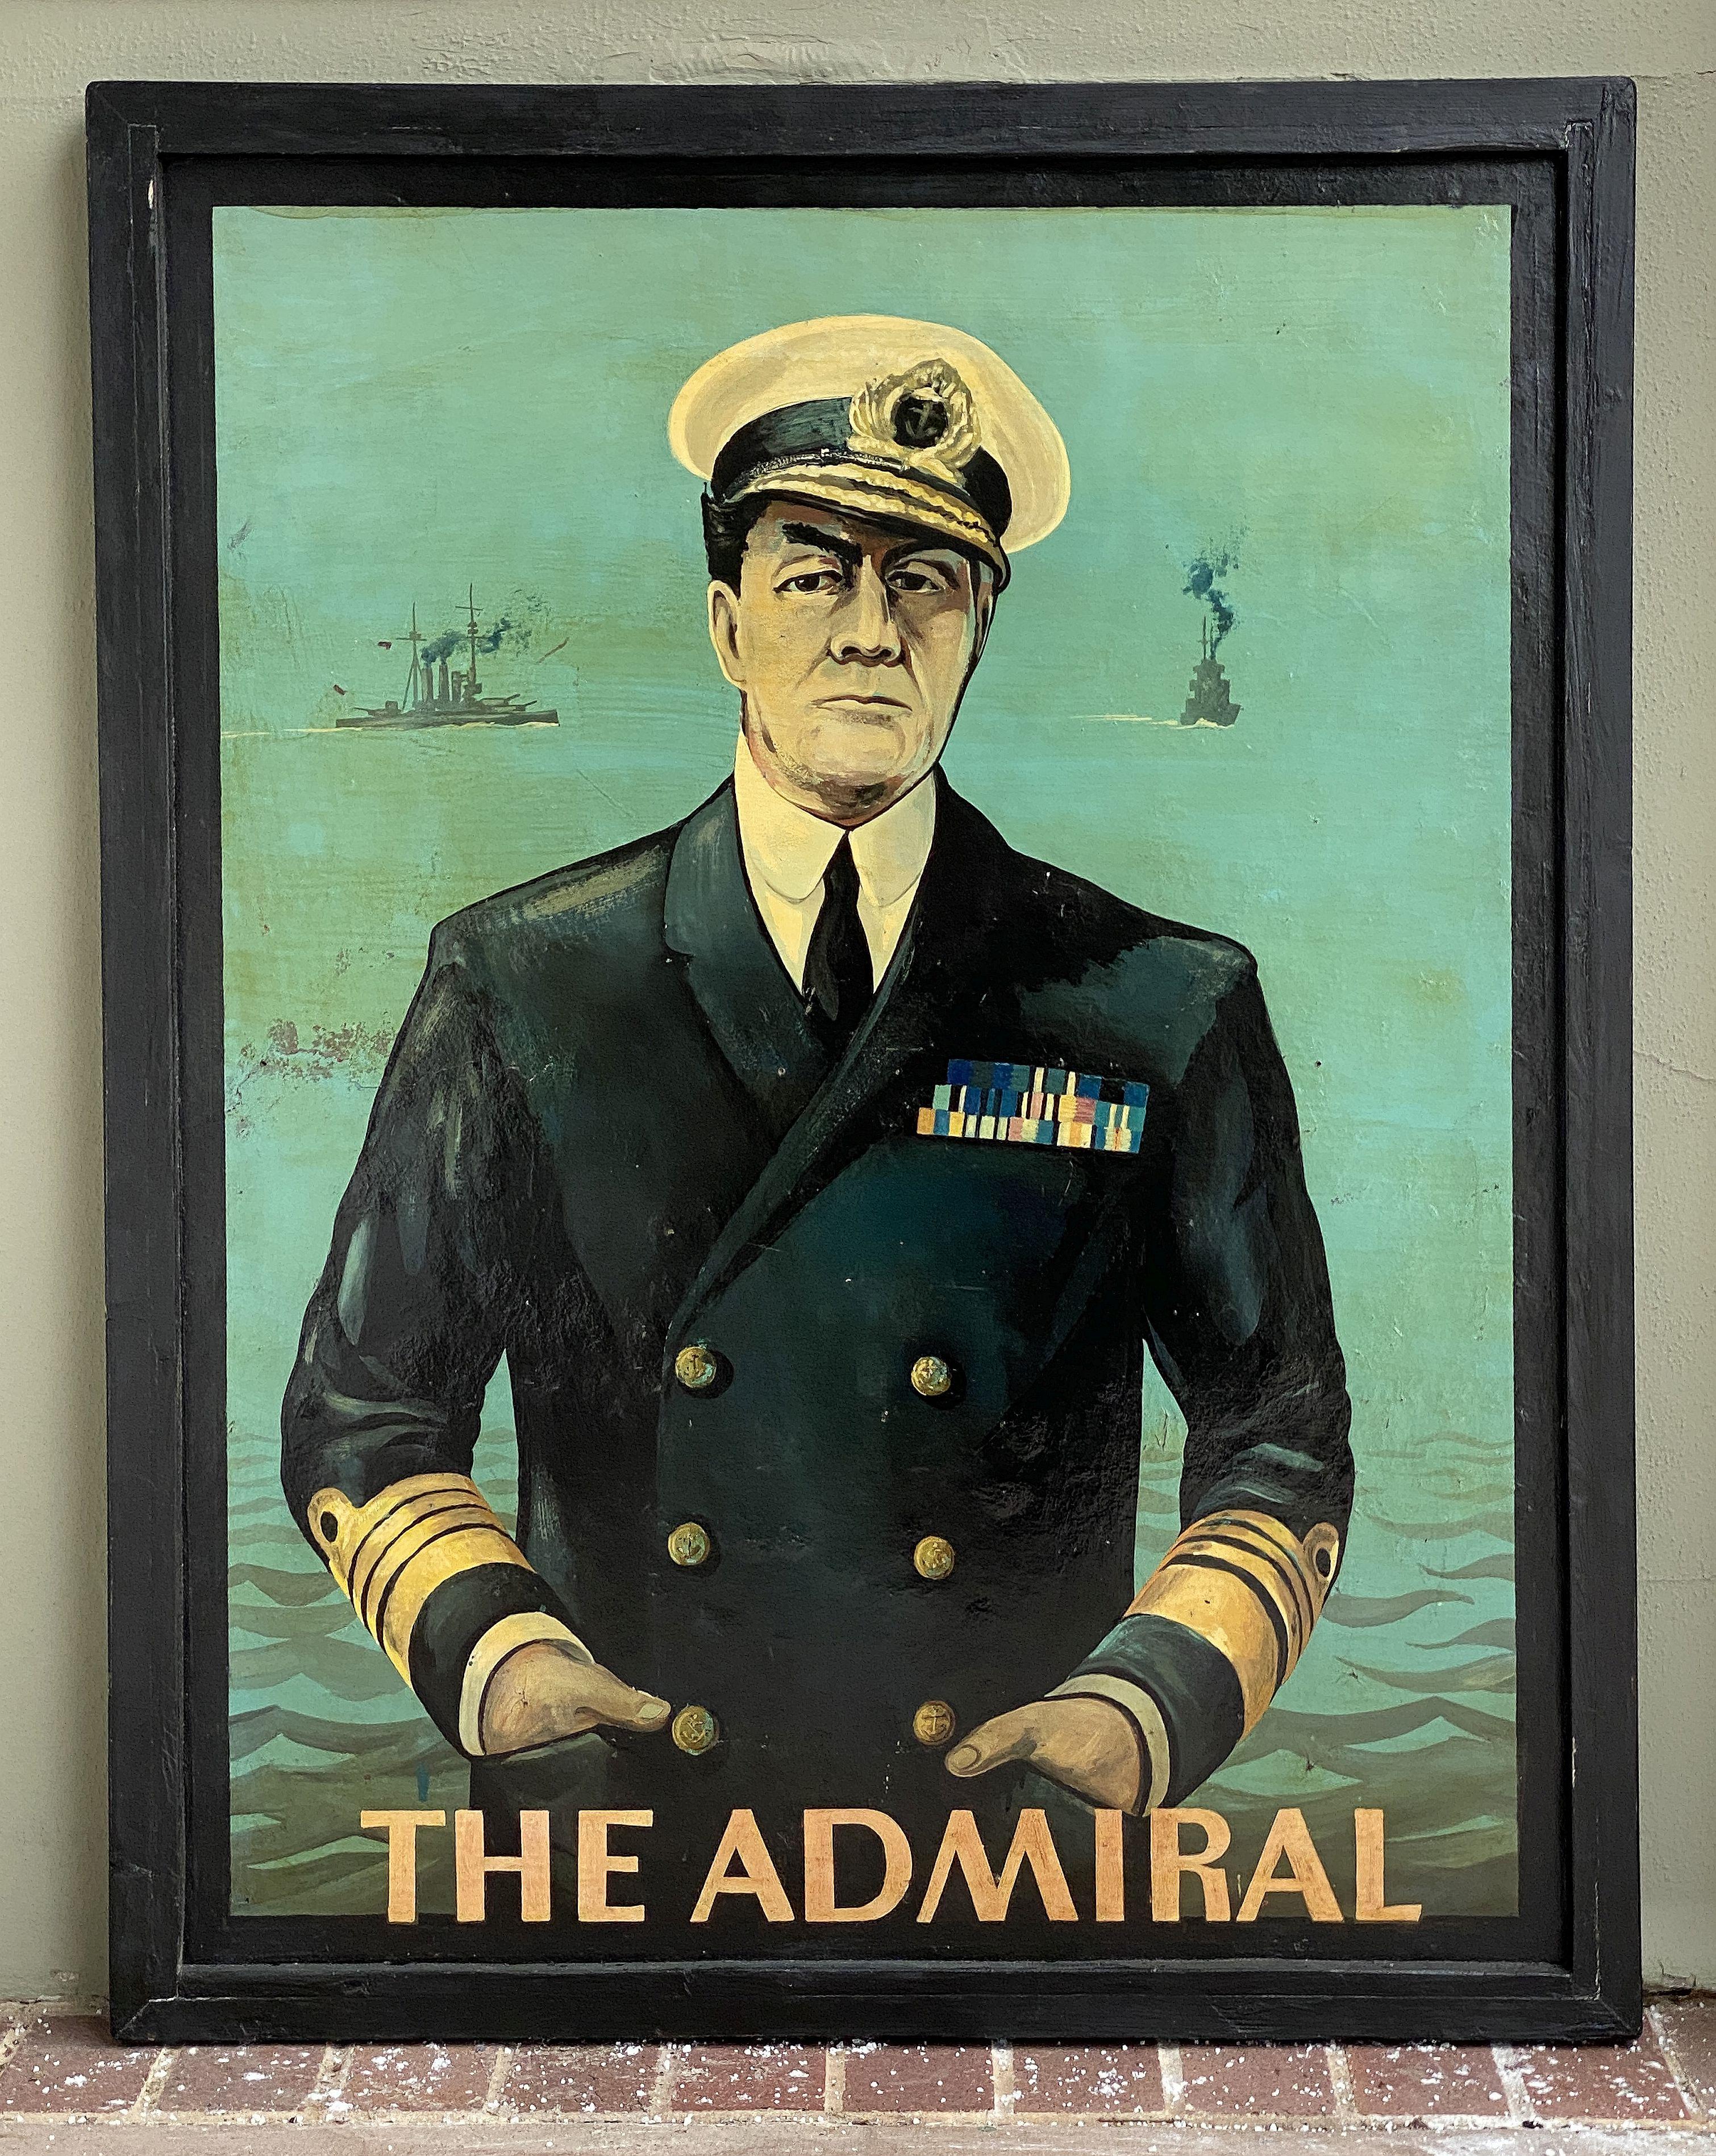 Authentique enseigne de pub anglaise (unilatérale) représentant le portrait d'un amiral décoré de la Royal Navy, avec la mer et des navires de guerre en arrière-plan, intitulée : The Admiral (L'amiral).

Un très bel exemple d'œuvre d'art